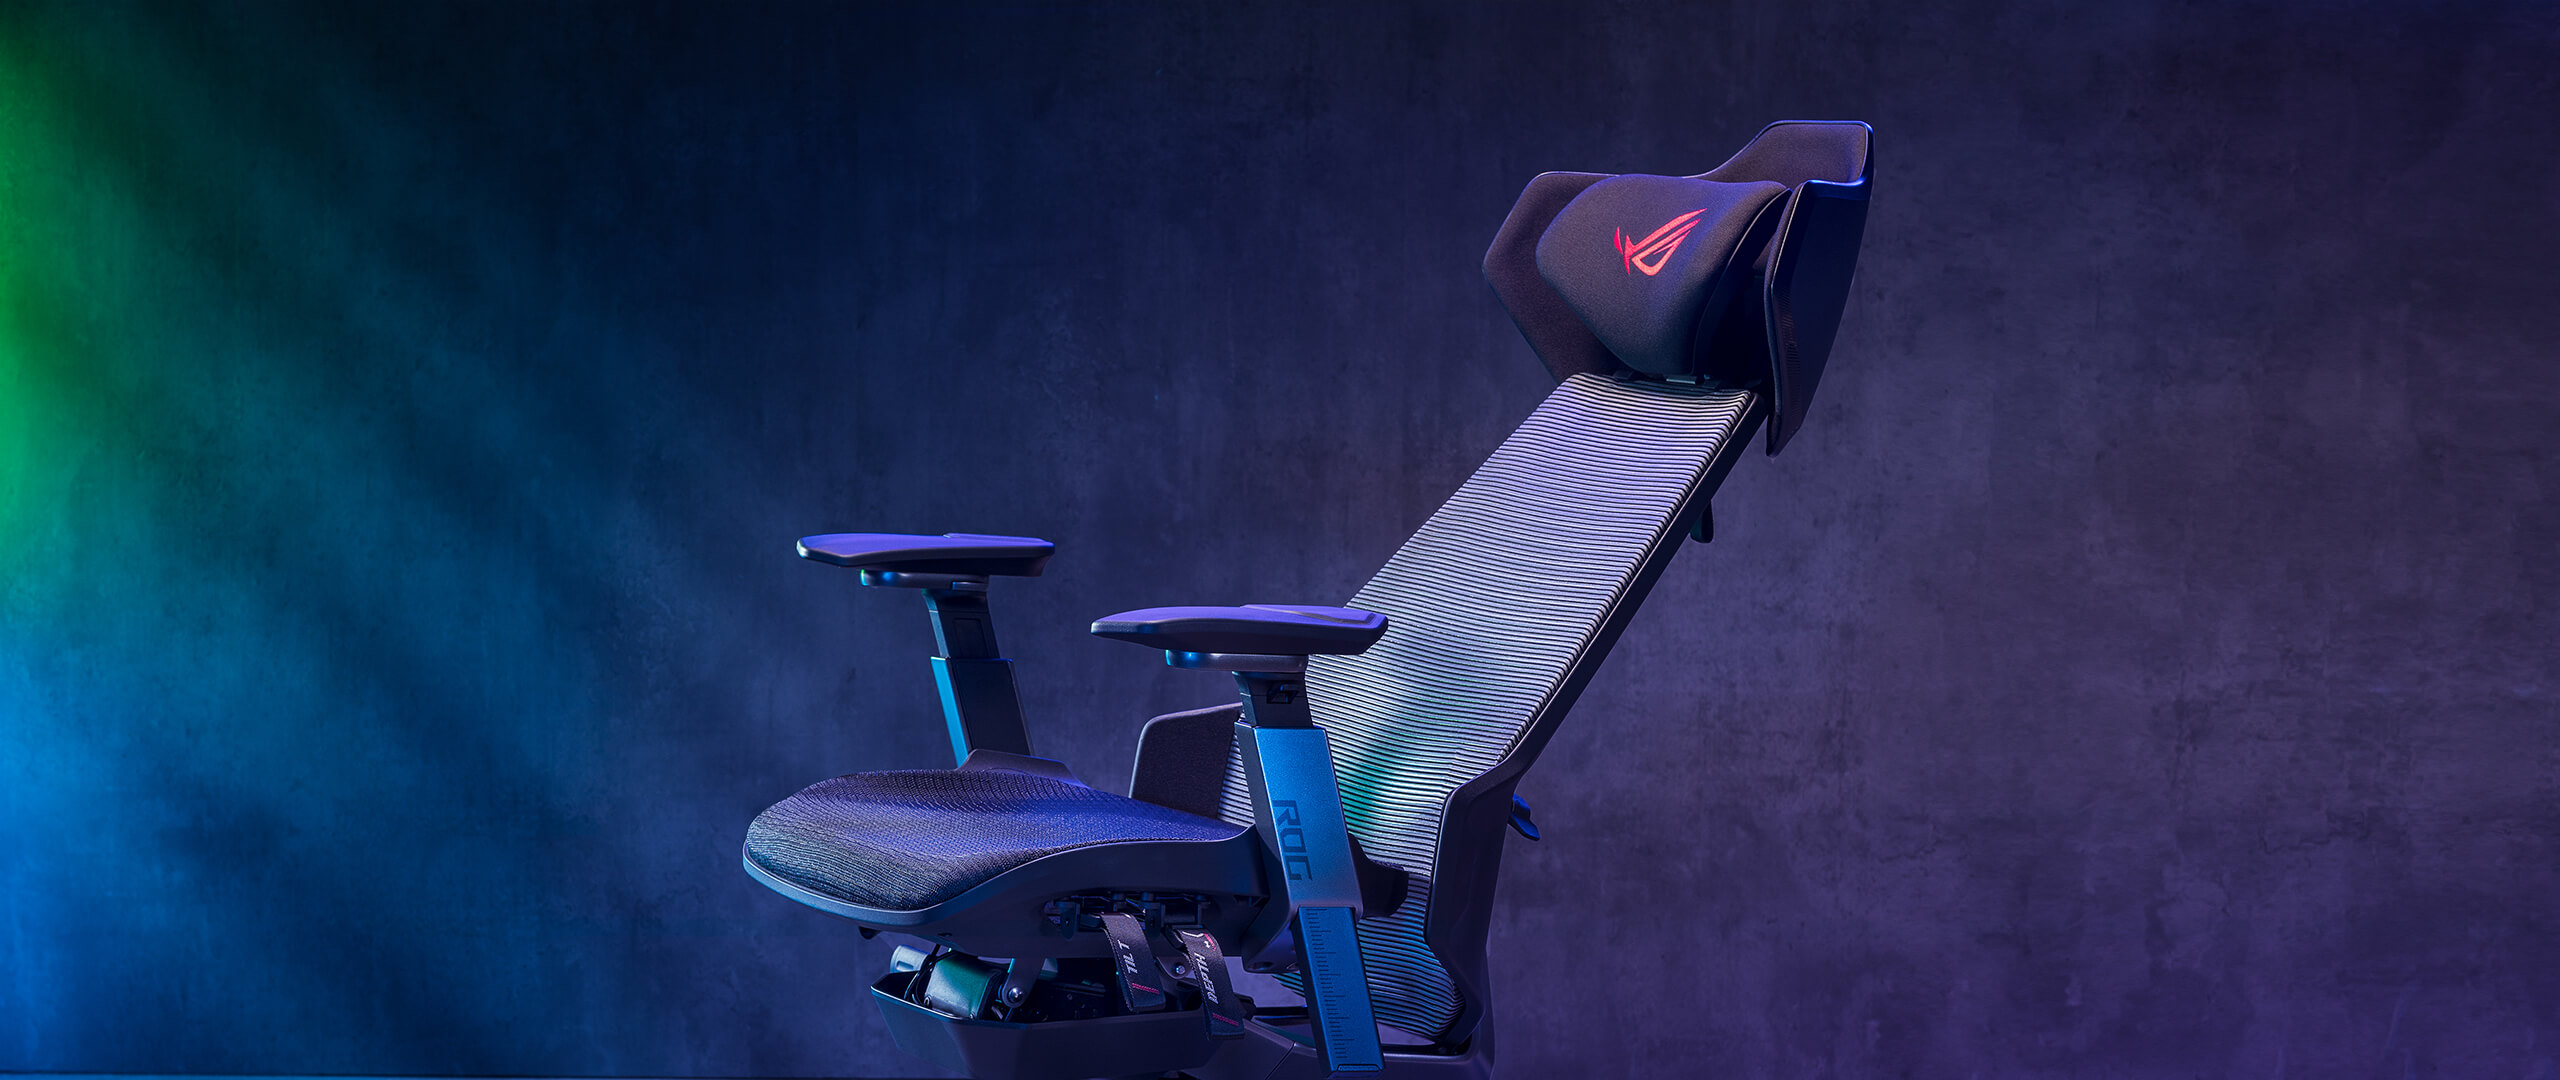 ROG Destrier Ergo 电竞椅椅背倾斜至特定角度的侧视图